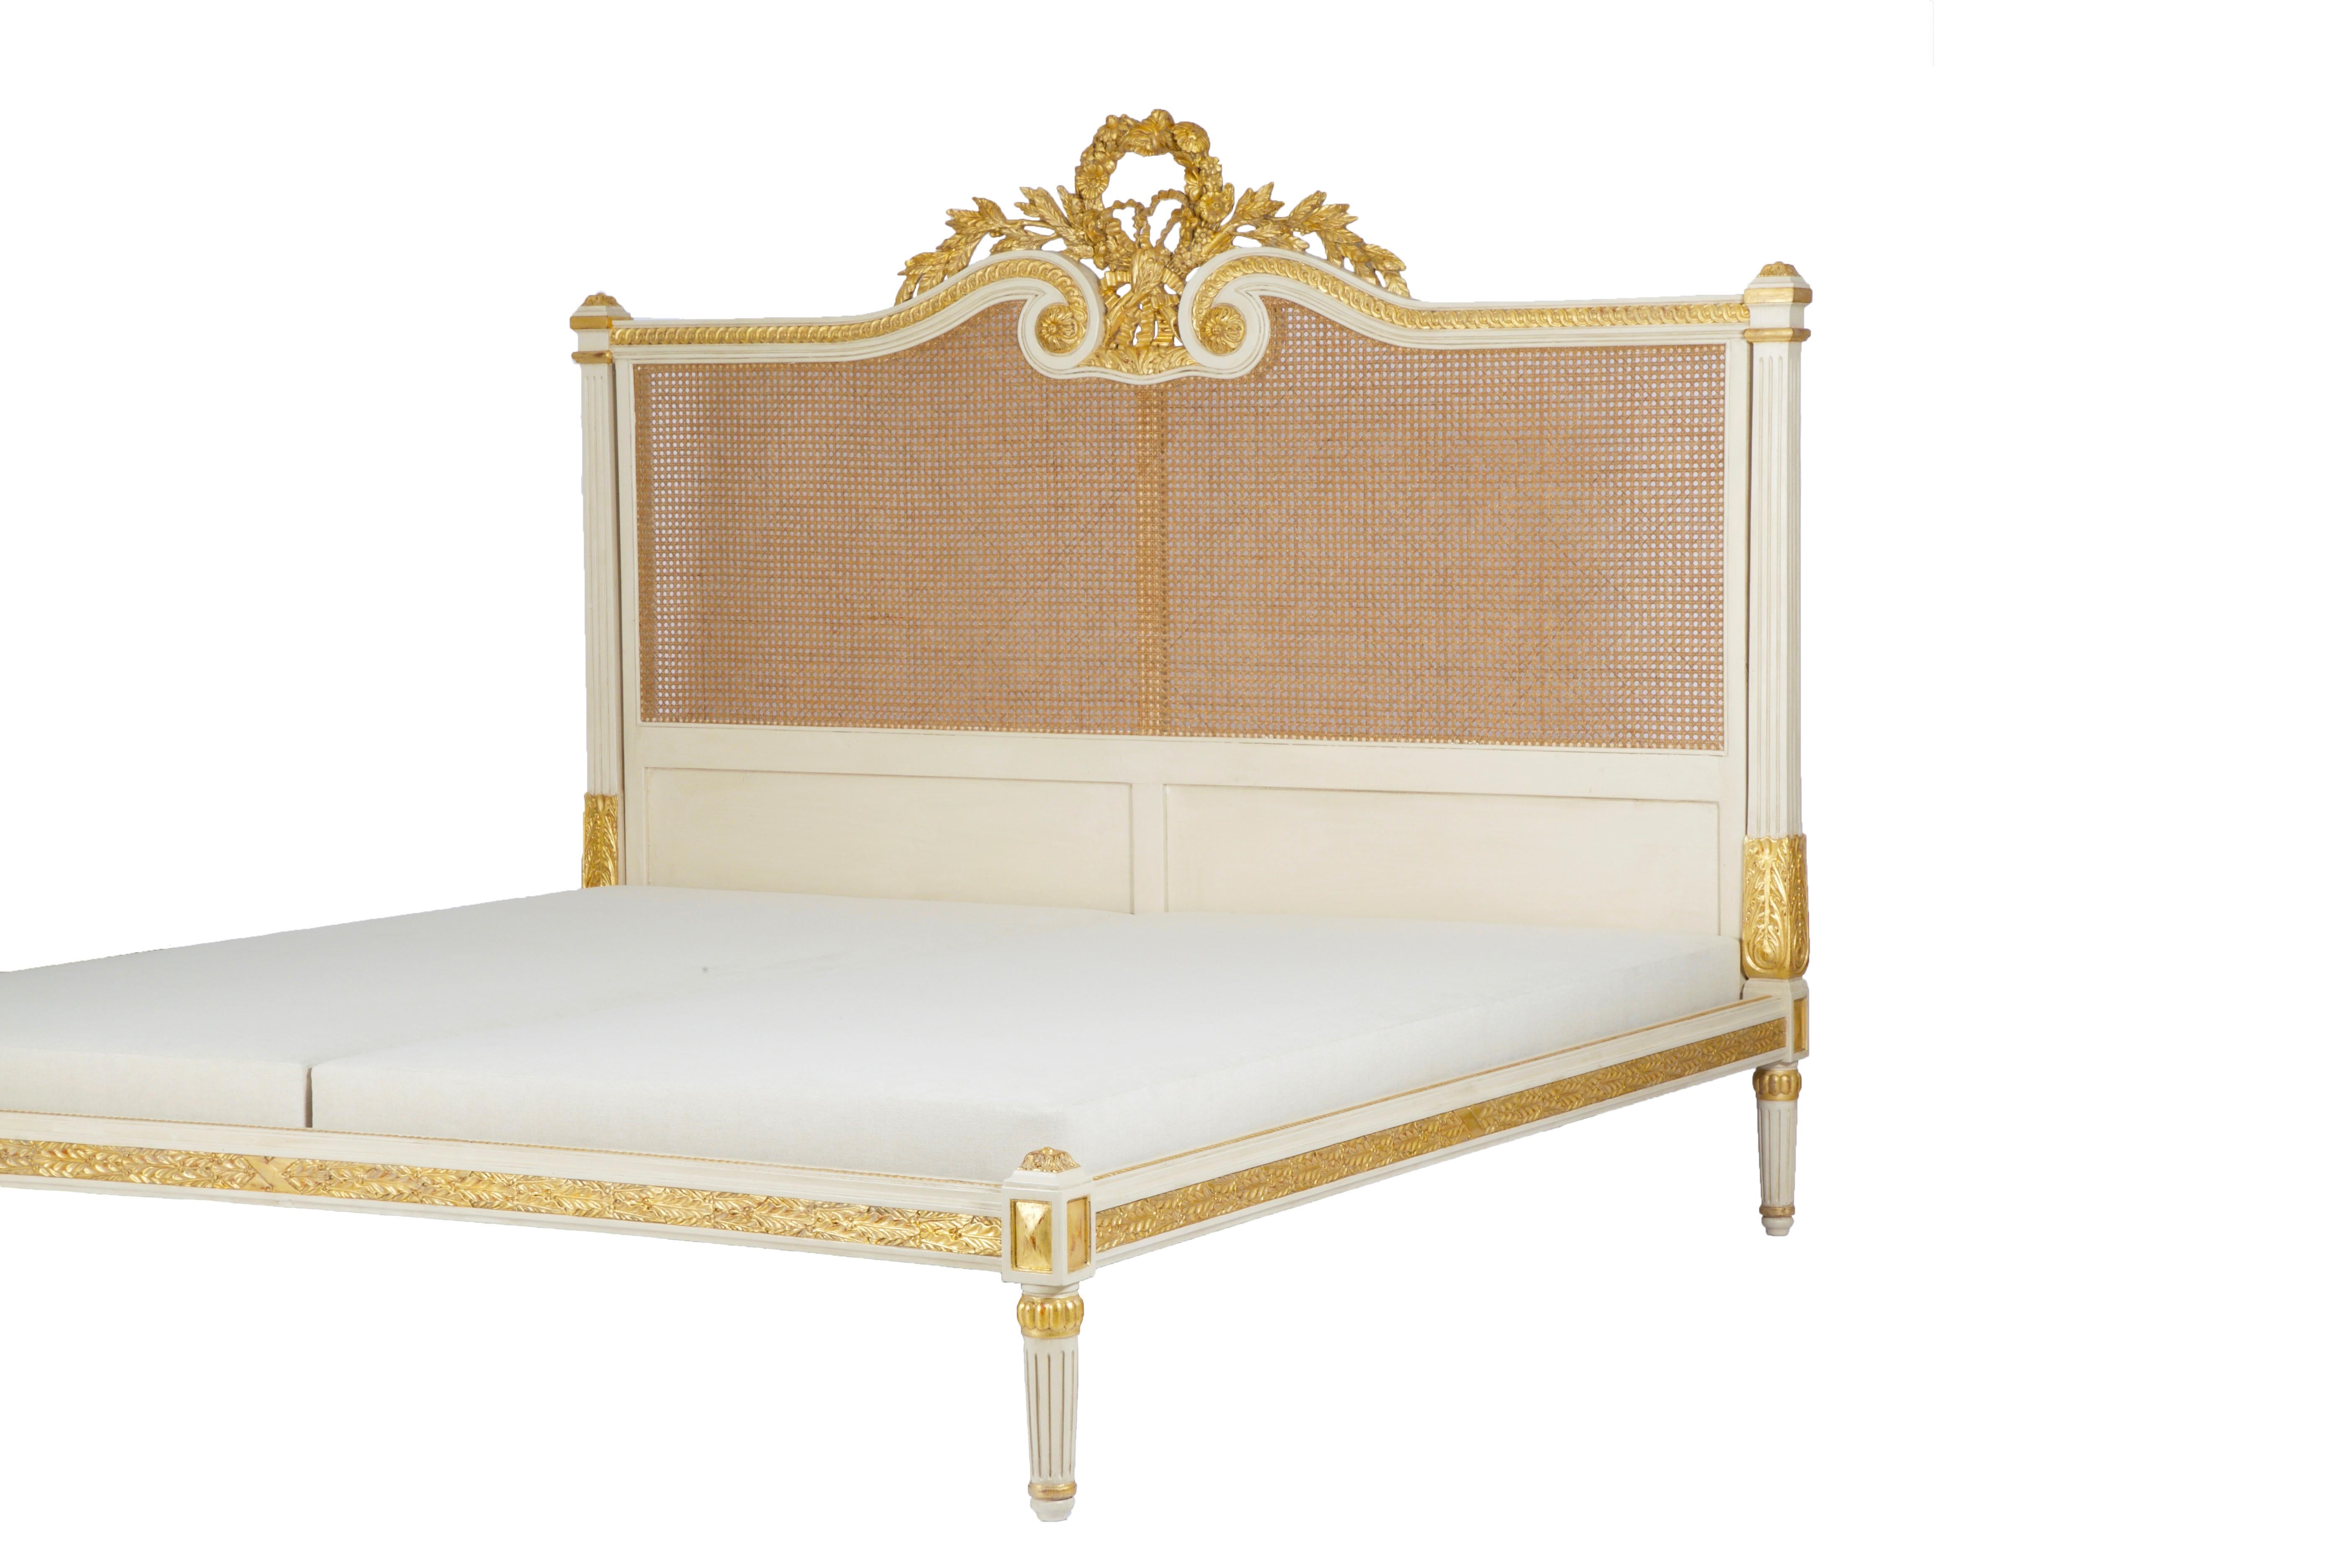 Das Bett Rosace ist ein elegantes Beispiel für den französischen LXVI-Stil. Mit seinen klassischen Säulen und den zurückhaltenden Verzierungen steht das Bettgestell aufrecht und strahlt ein edles Vertrauen aus. Der Scheitelpunkt des Kopfteils ist